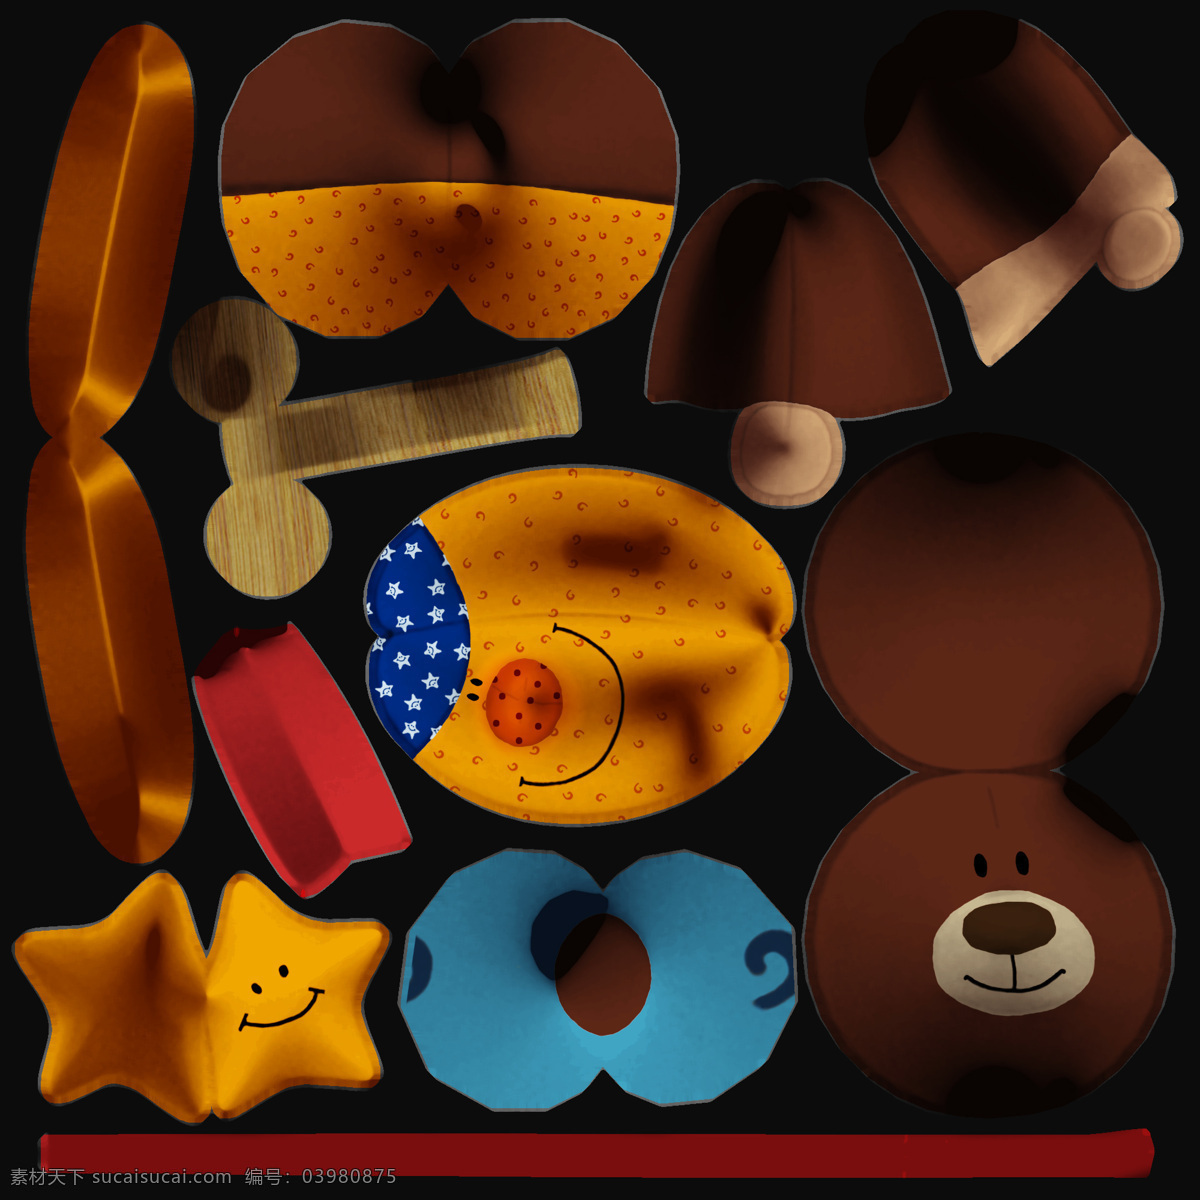 3d设计模型 max 动物 儿童用品 毛绒玩具 模型 室内模型 玩具 香蕉 小熊 香蕉素材下载 香蕉模板下载 毛茸茸 动物玩具 毛绒 儿童玩具 源文件 3d模型素材 其他3d模型